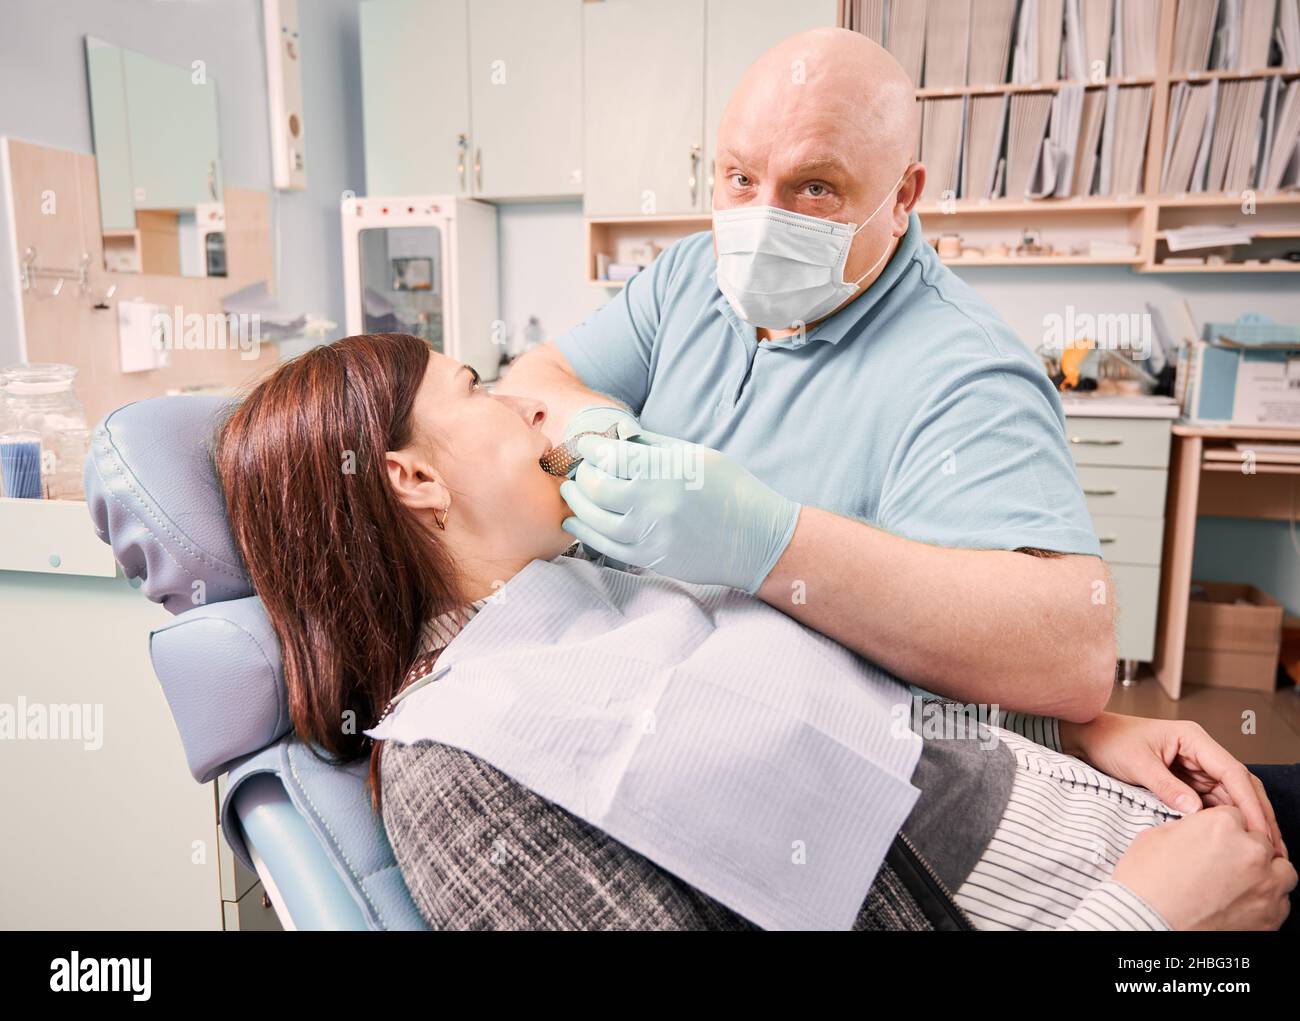 Dentista maschile che esegue la procedura dentale nel moderno centro medico. Paziente sdraiato in sedia dentale durante il trattamento stomatologico. Concetto di odontoiatria, stomatologia e cura dentale. Foto Stock